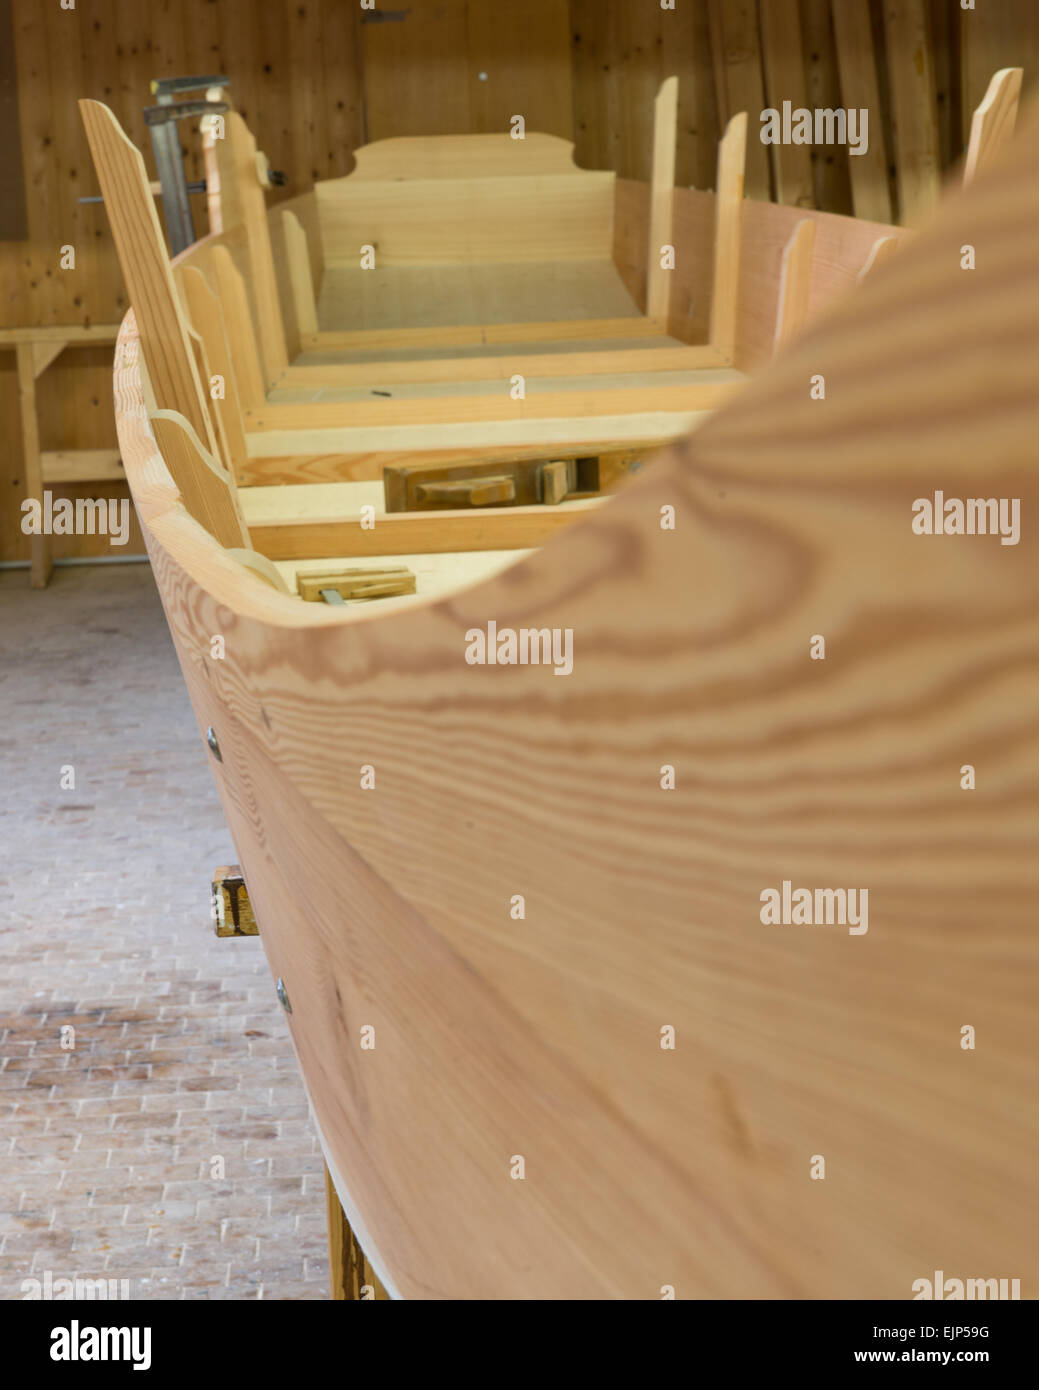 Konstruktion einer Plätte, flaches alpines Holzboot, Salzkammergut, Styria, Austria Stock Photo